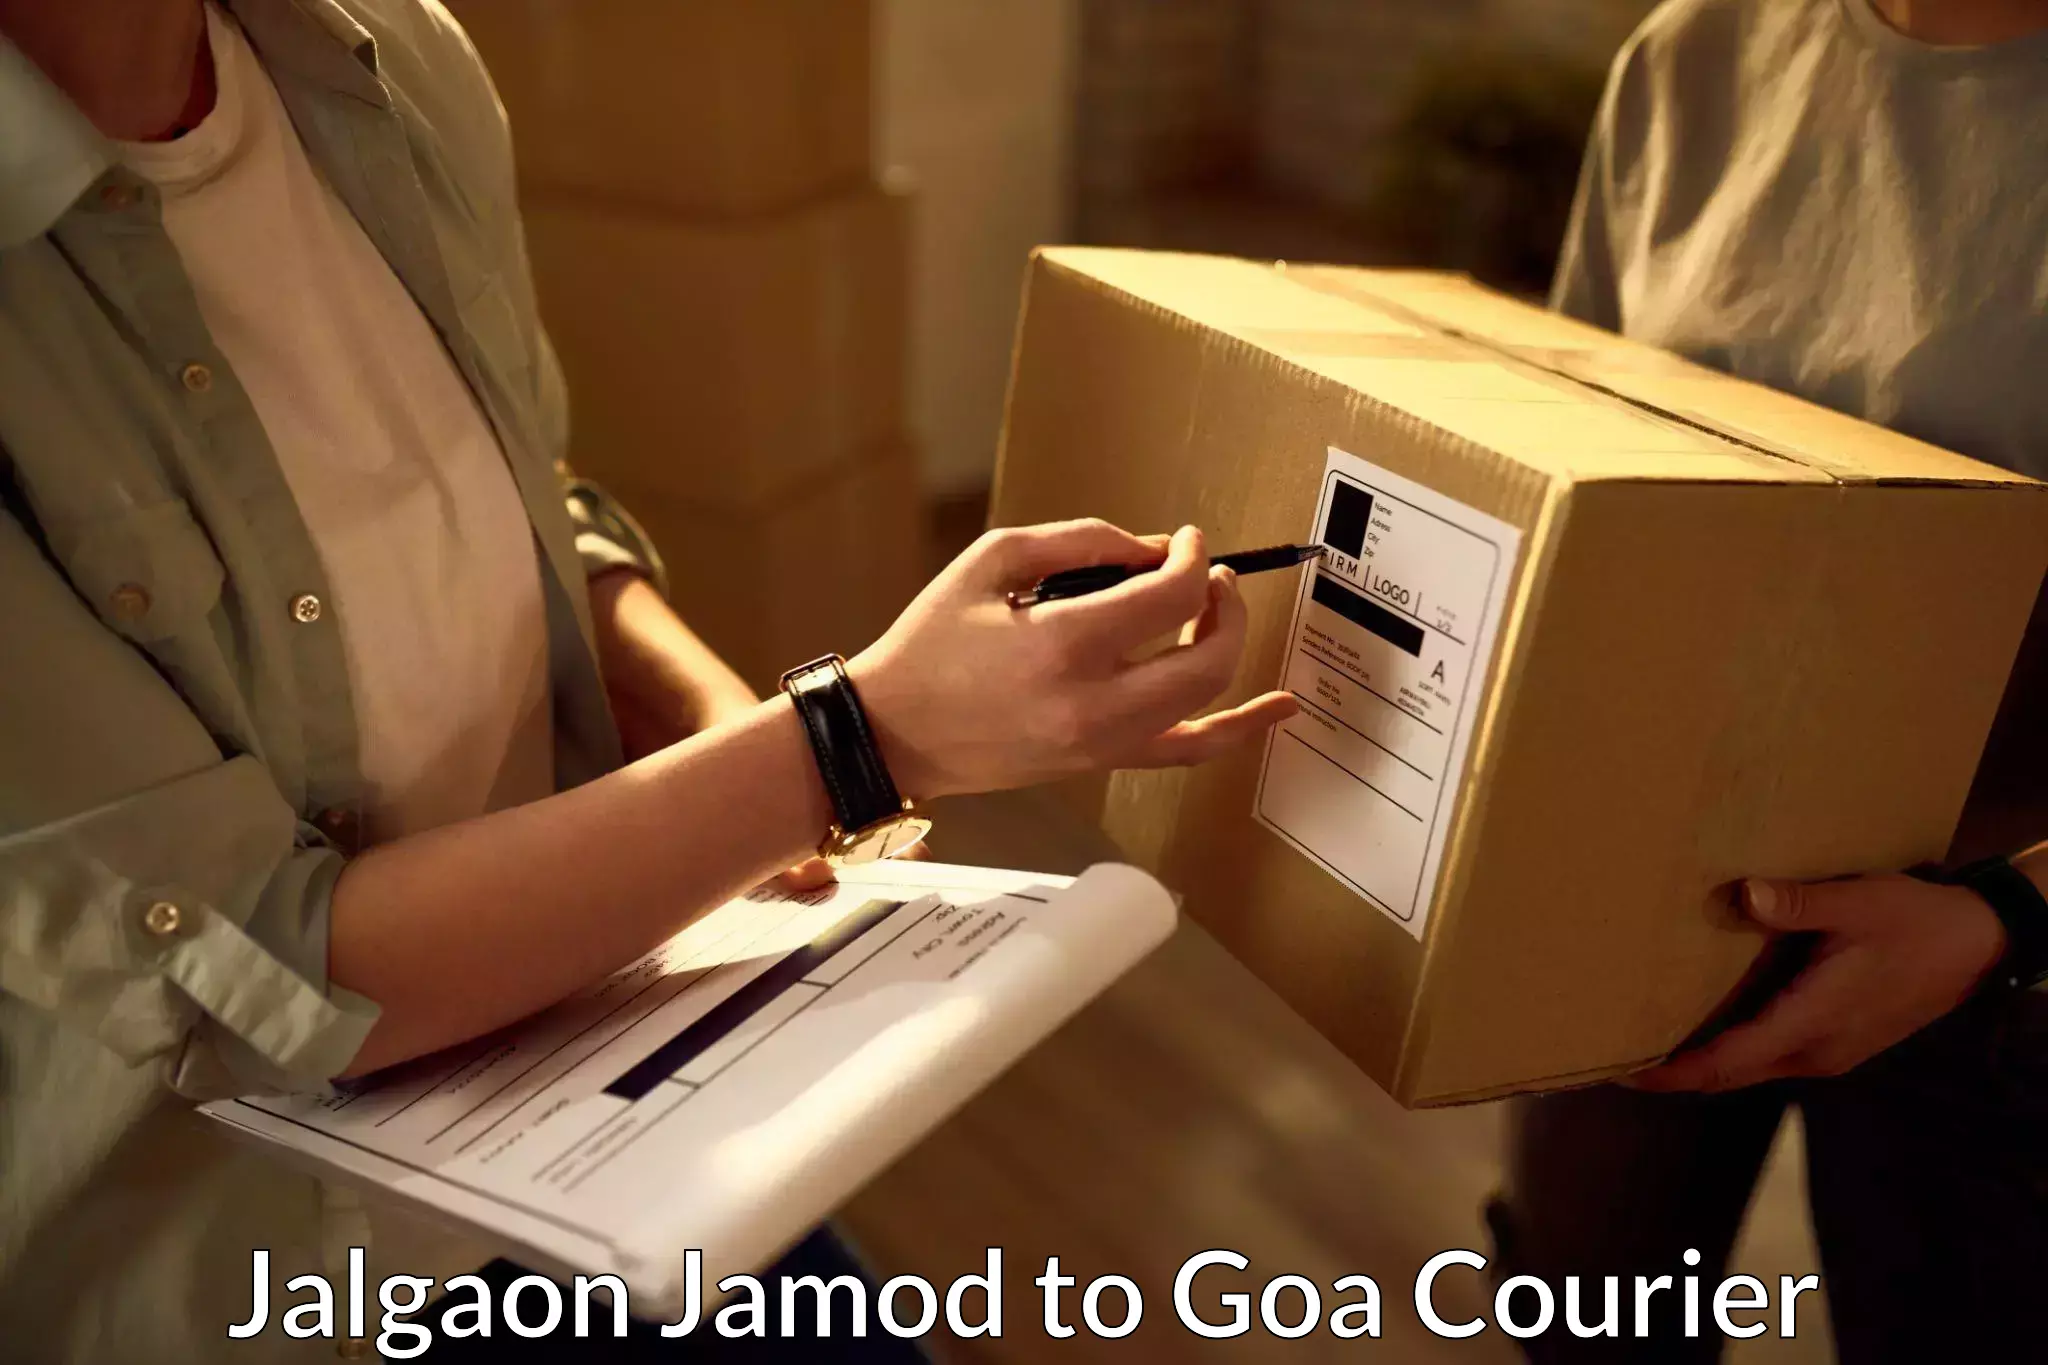 24/7 shipping services Jalgaon Jamod to NIT Goa